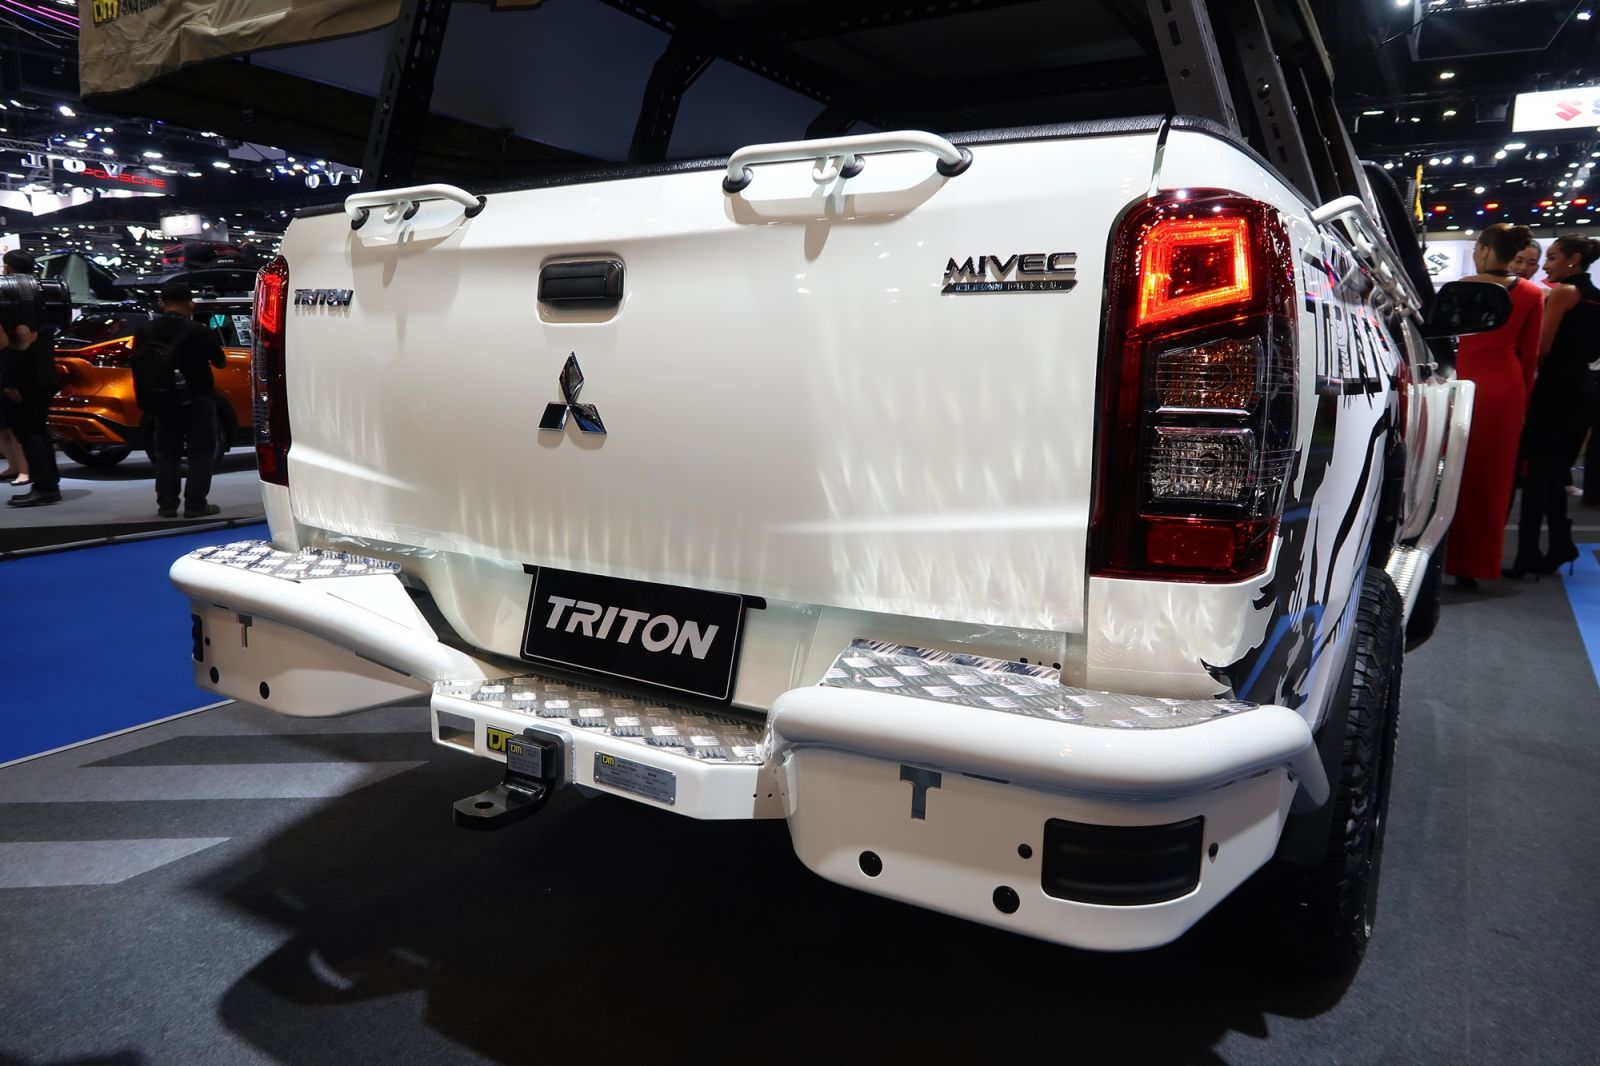 Mitsubishi Triton